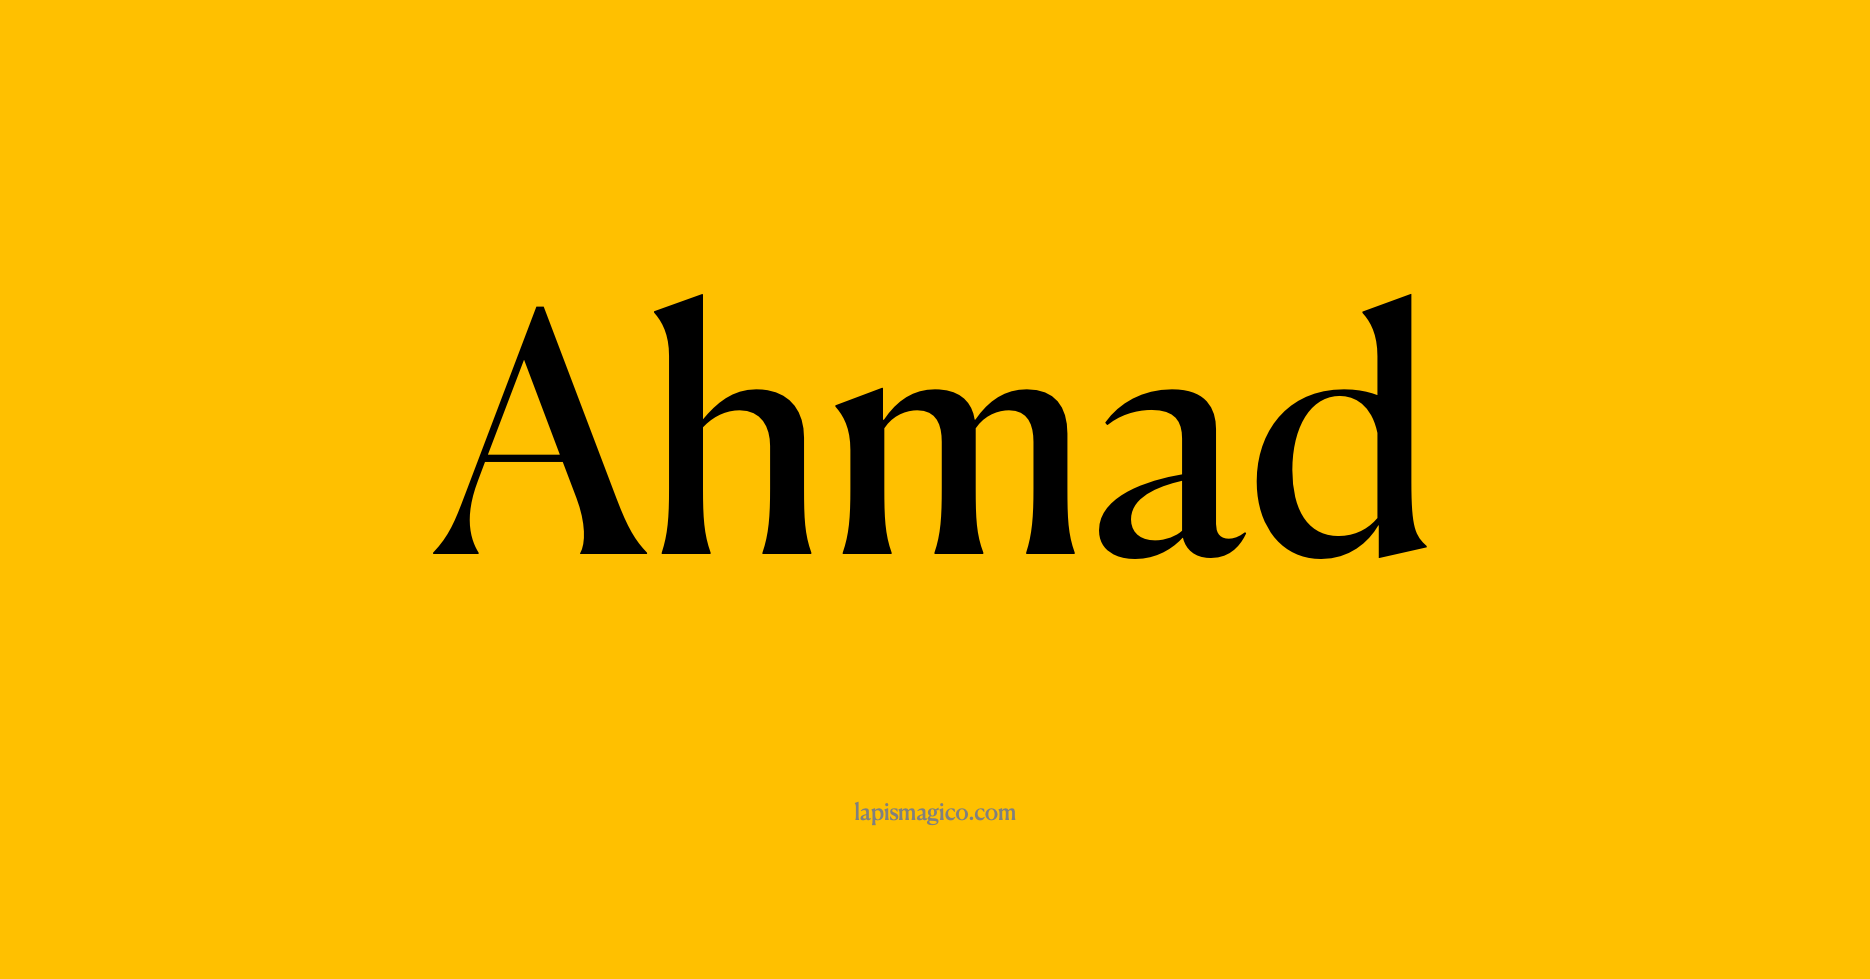 Nome Ahmad